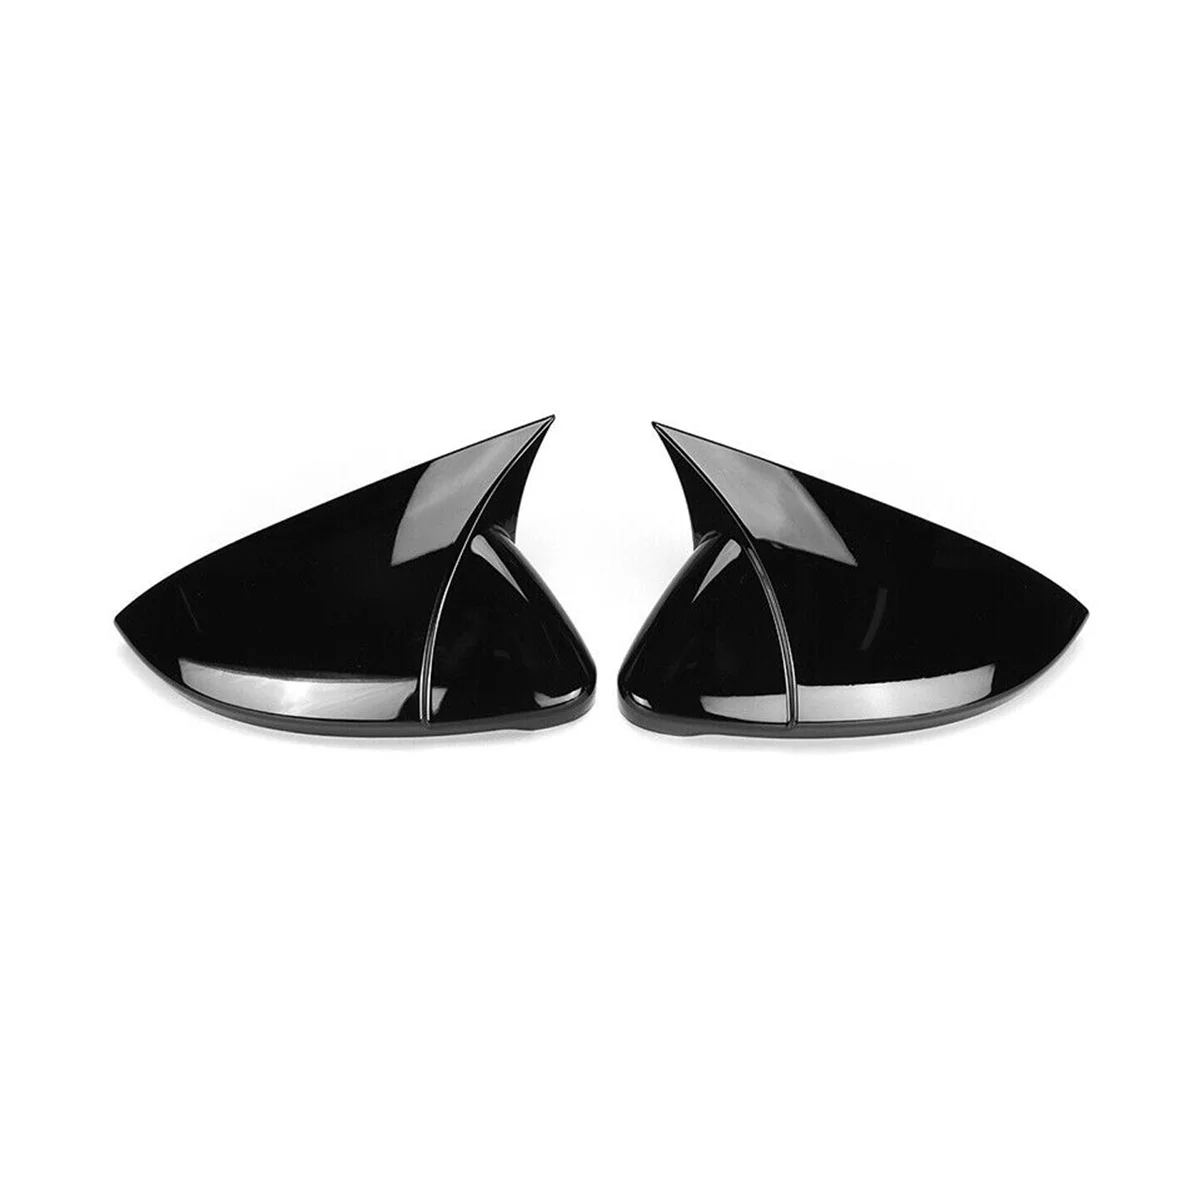 

For Golf MK7 MK7.5 GTD R Rear View Mirror Cover Bullhorn Conversion Universal Bright Black